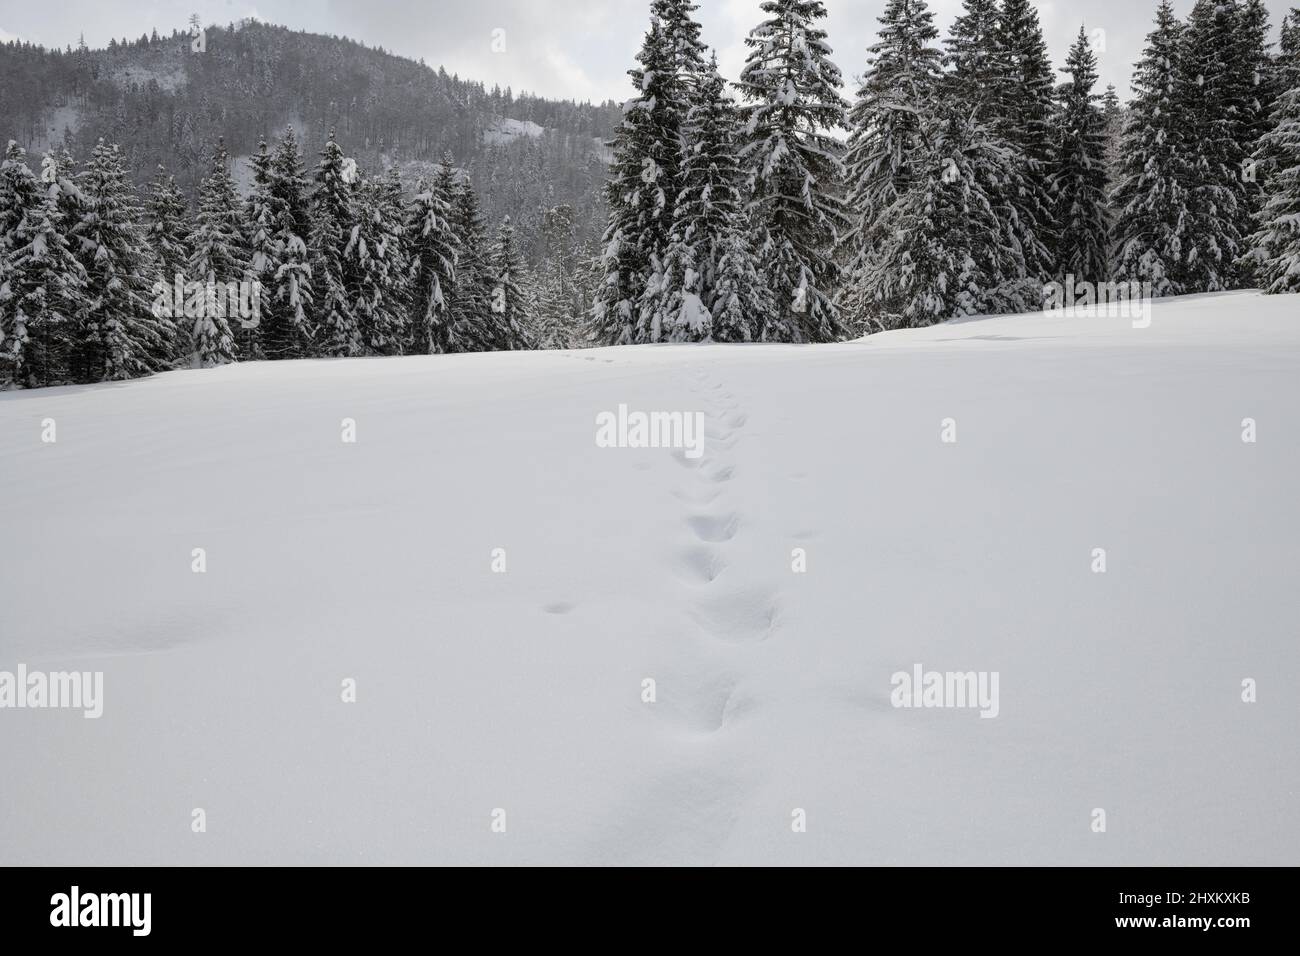 tracce di neve fresca caduta profonda con foresta di neve coperta abeti e spruces sullo sfondo Foto Stock